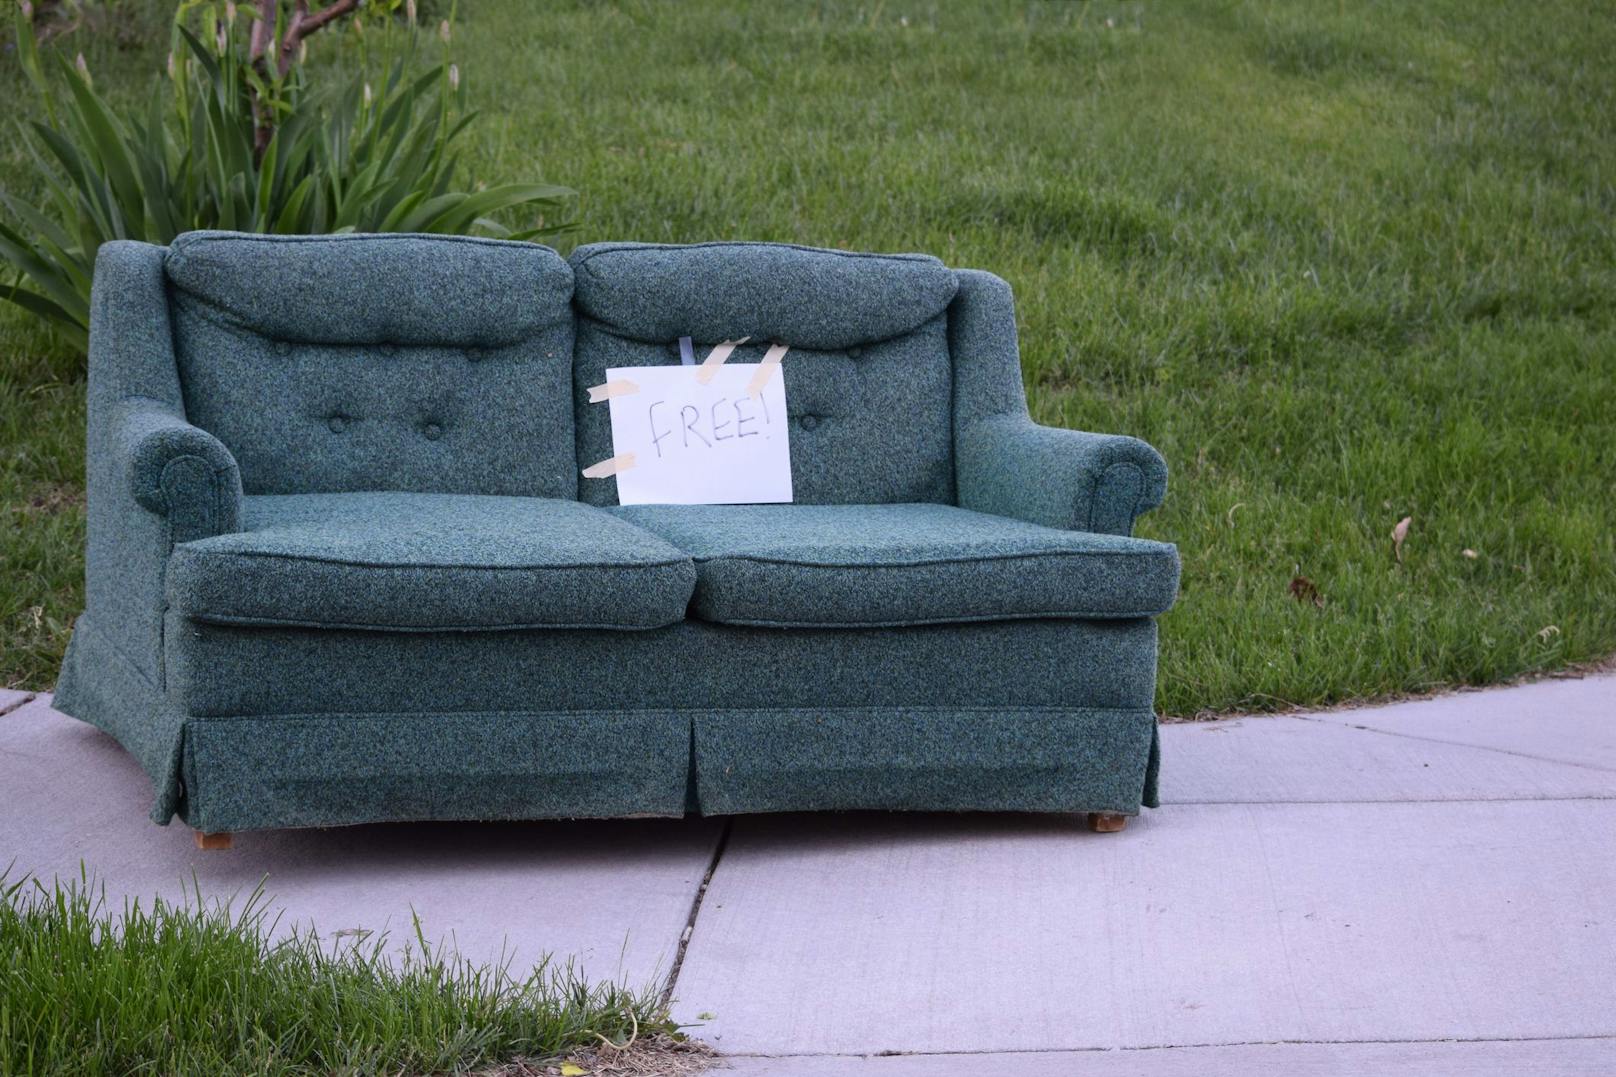 Die Couch wurde von ihren Besitzern gratis weitergegeben. (Symbolbild)